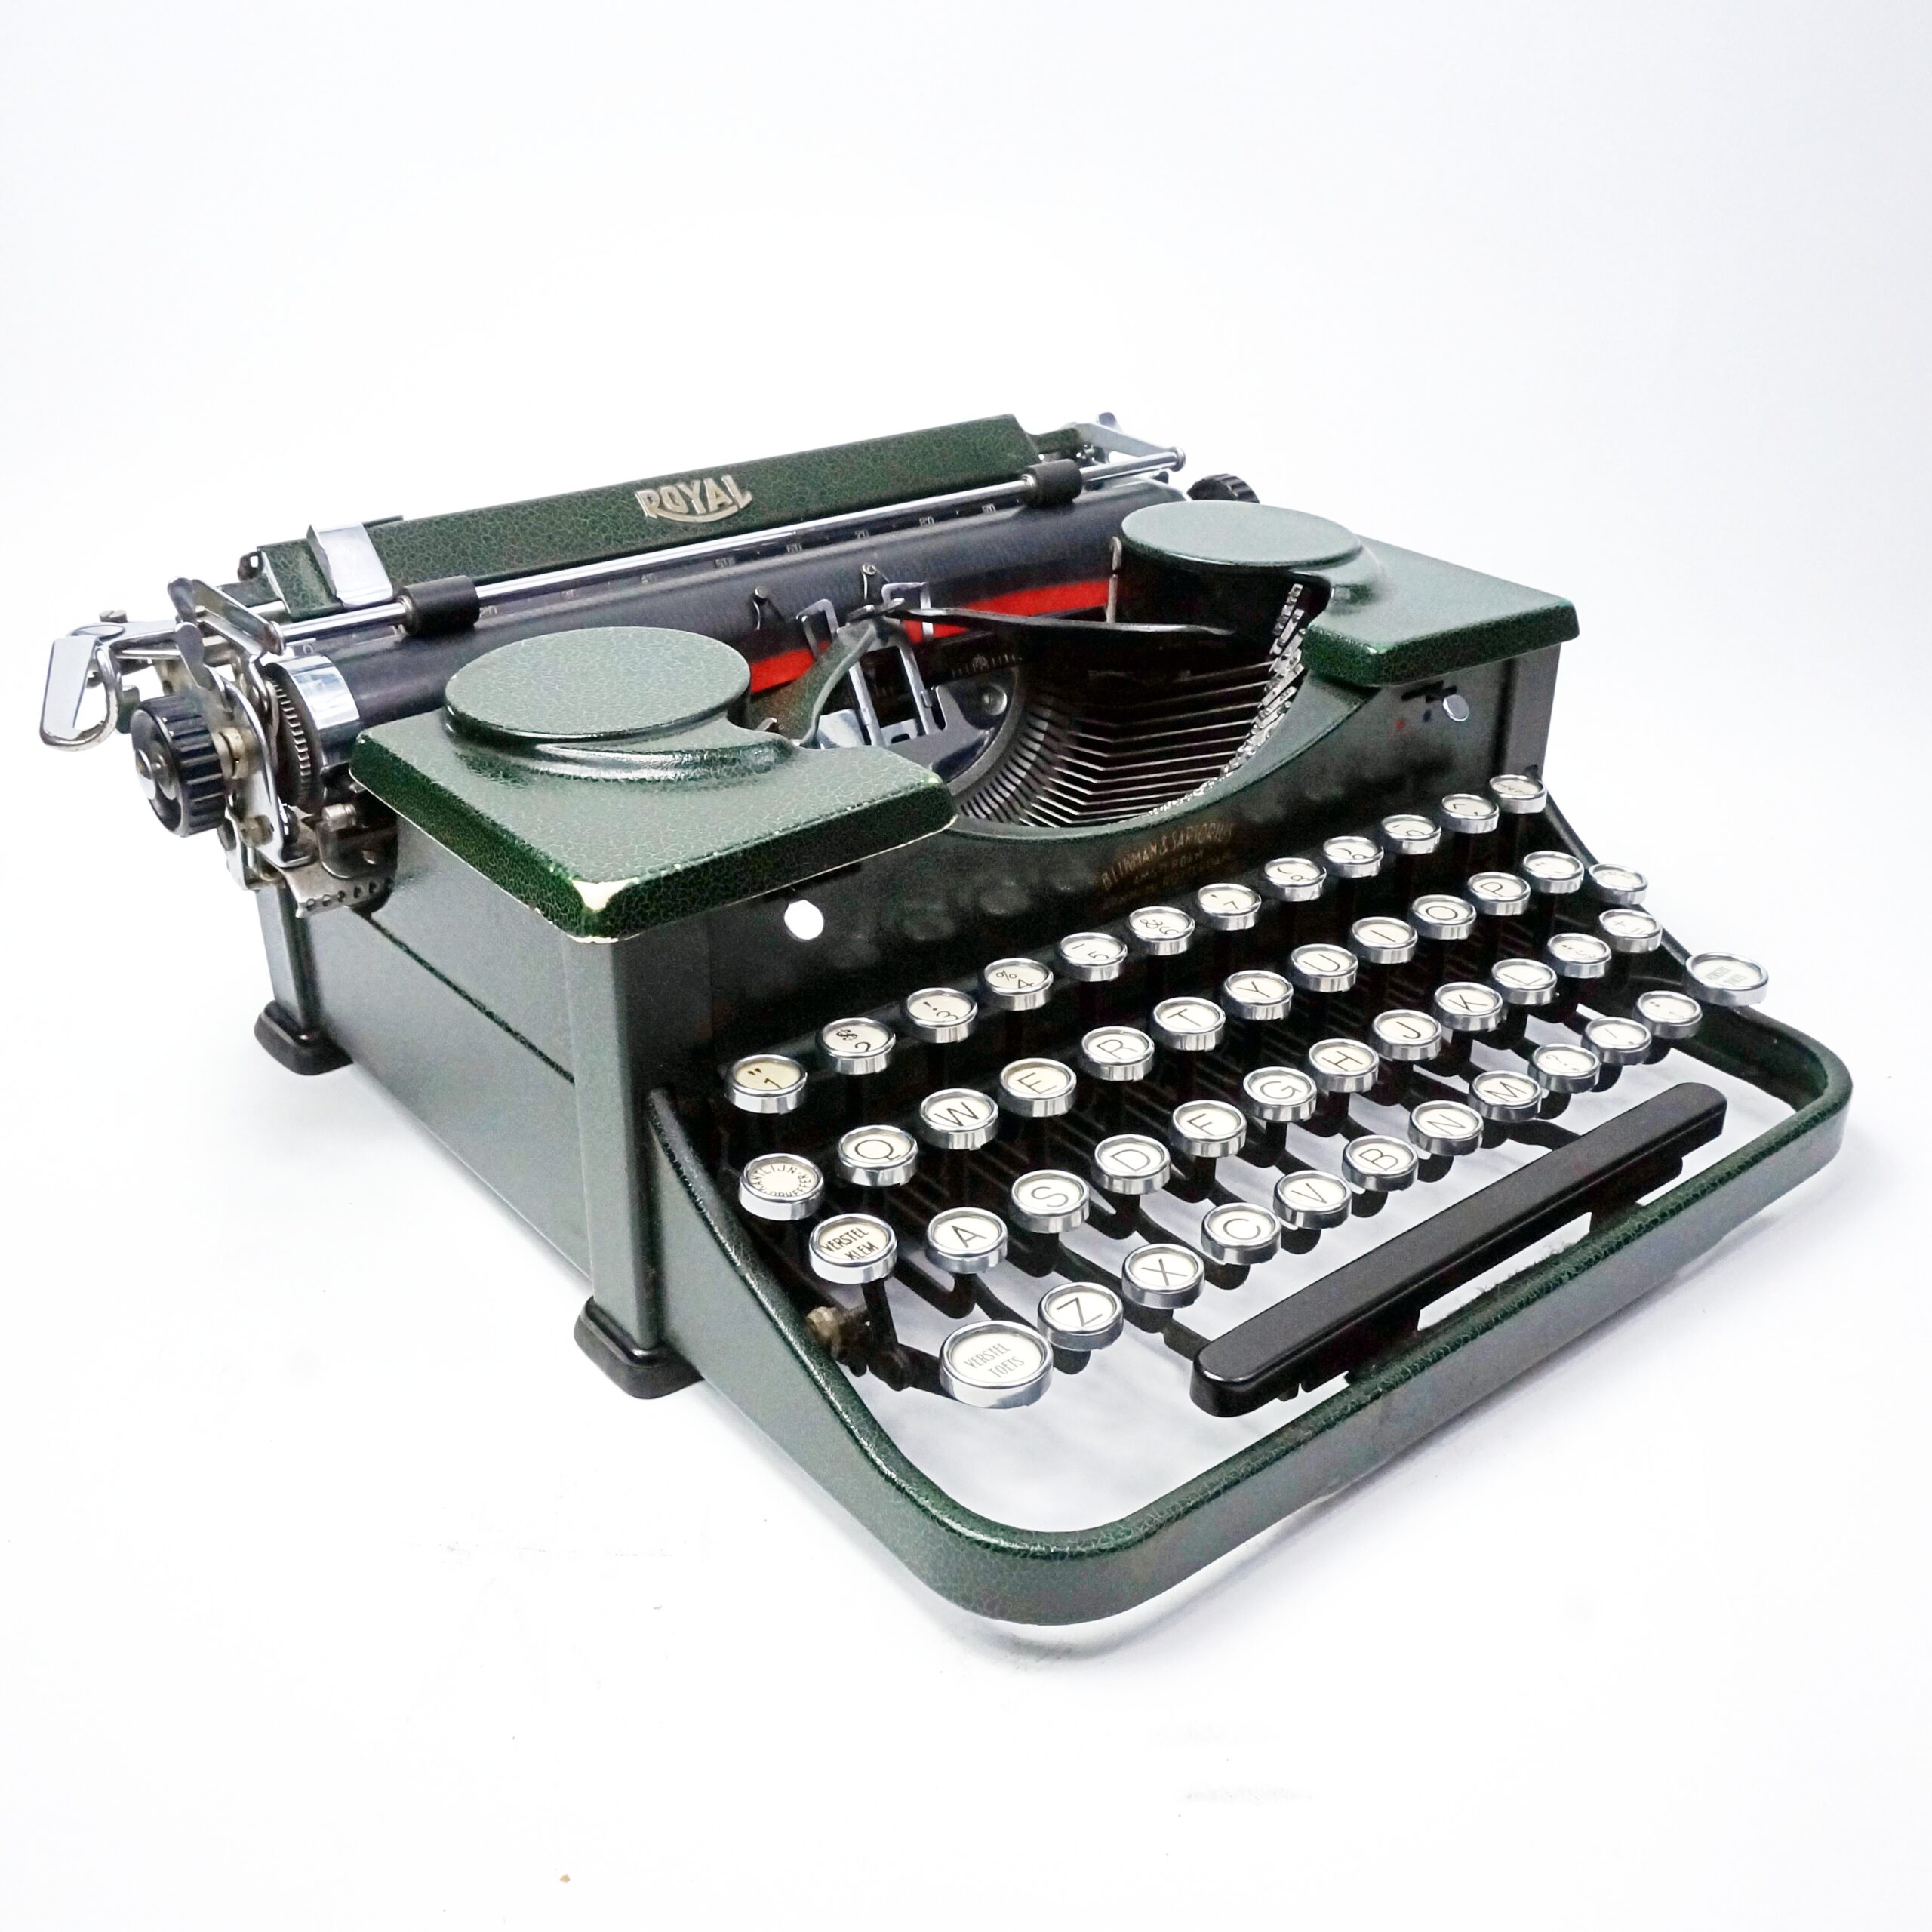 Royal Royalite Green Portable Typewriter W/ Original Case Made